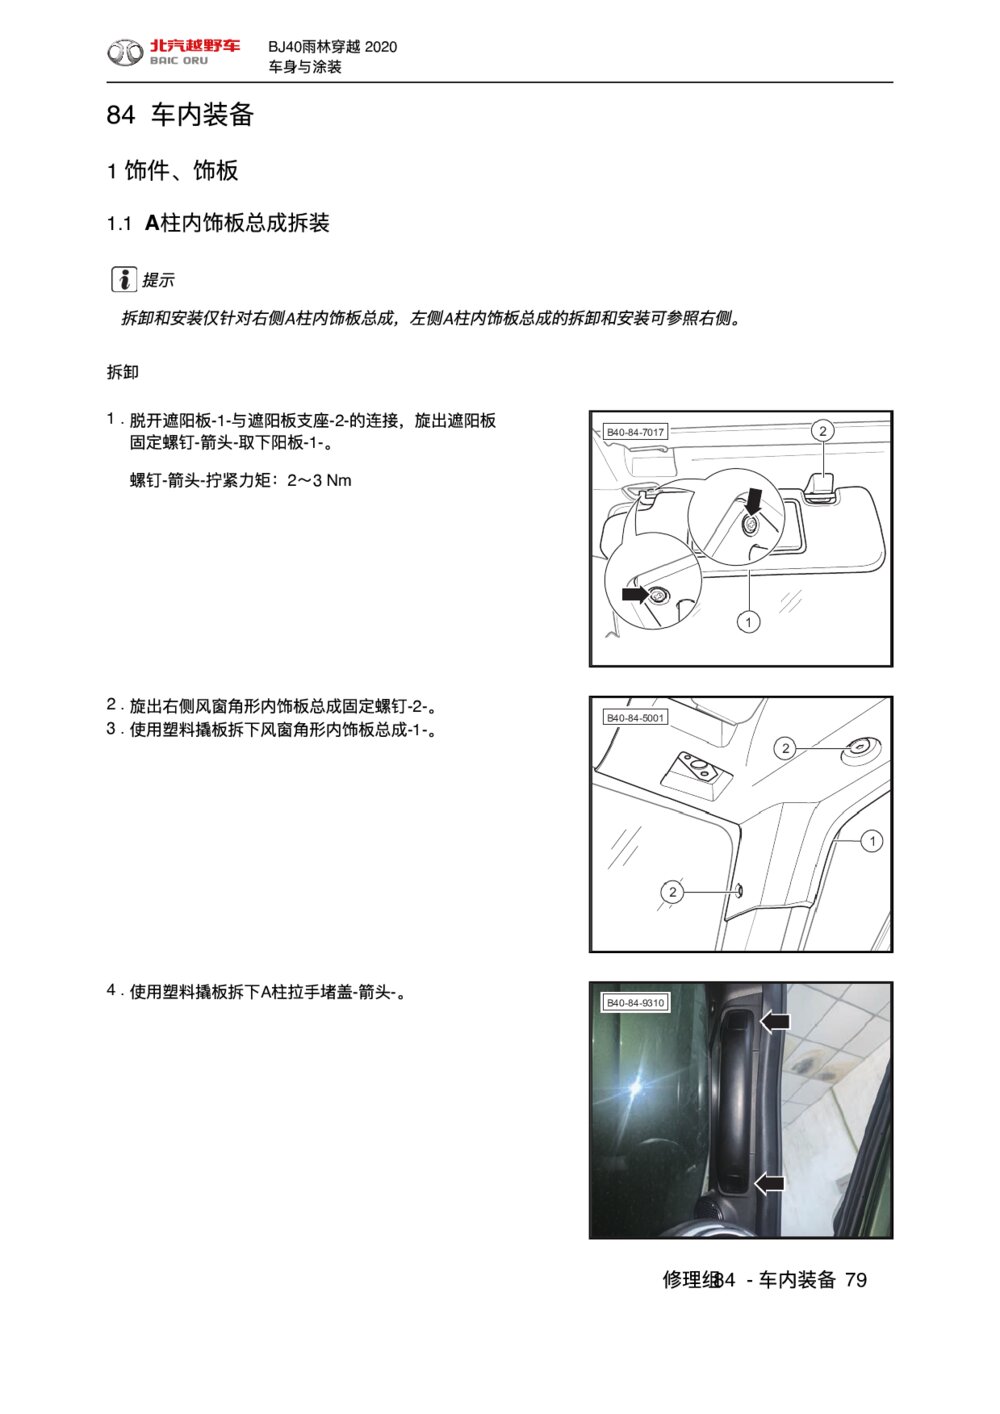 2020款北京BJ40车内装备饰件、饰板拆装手册1